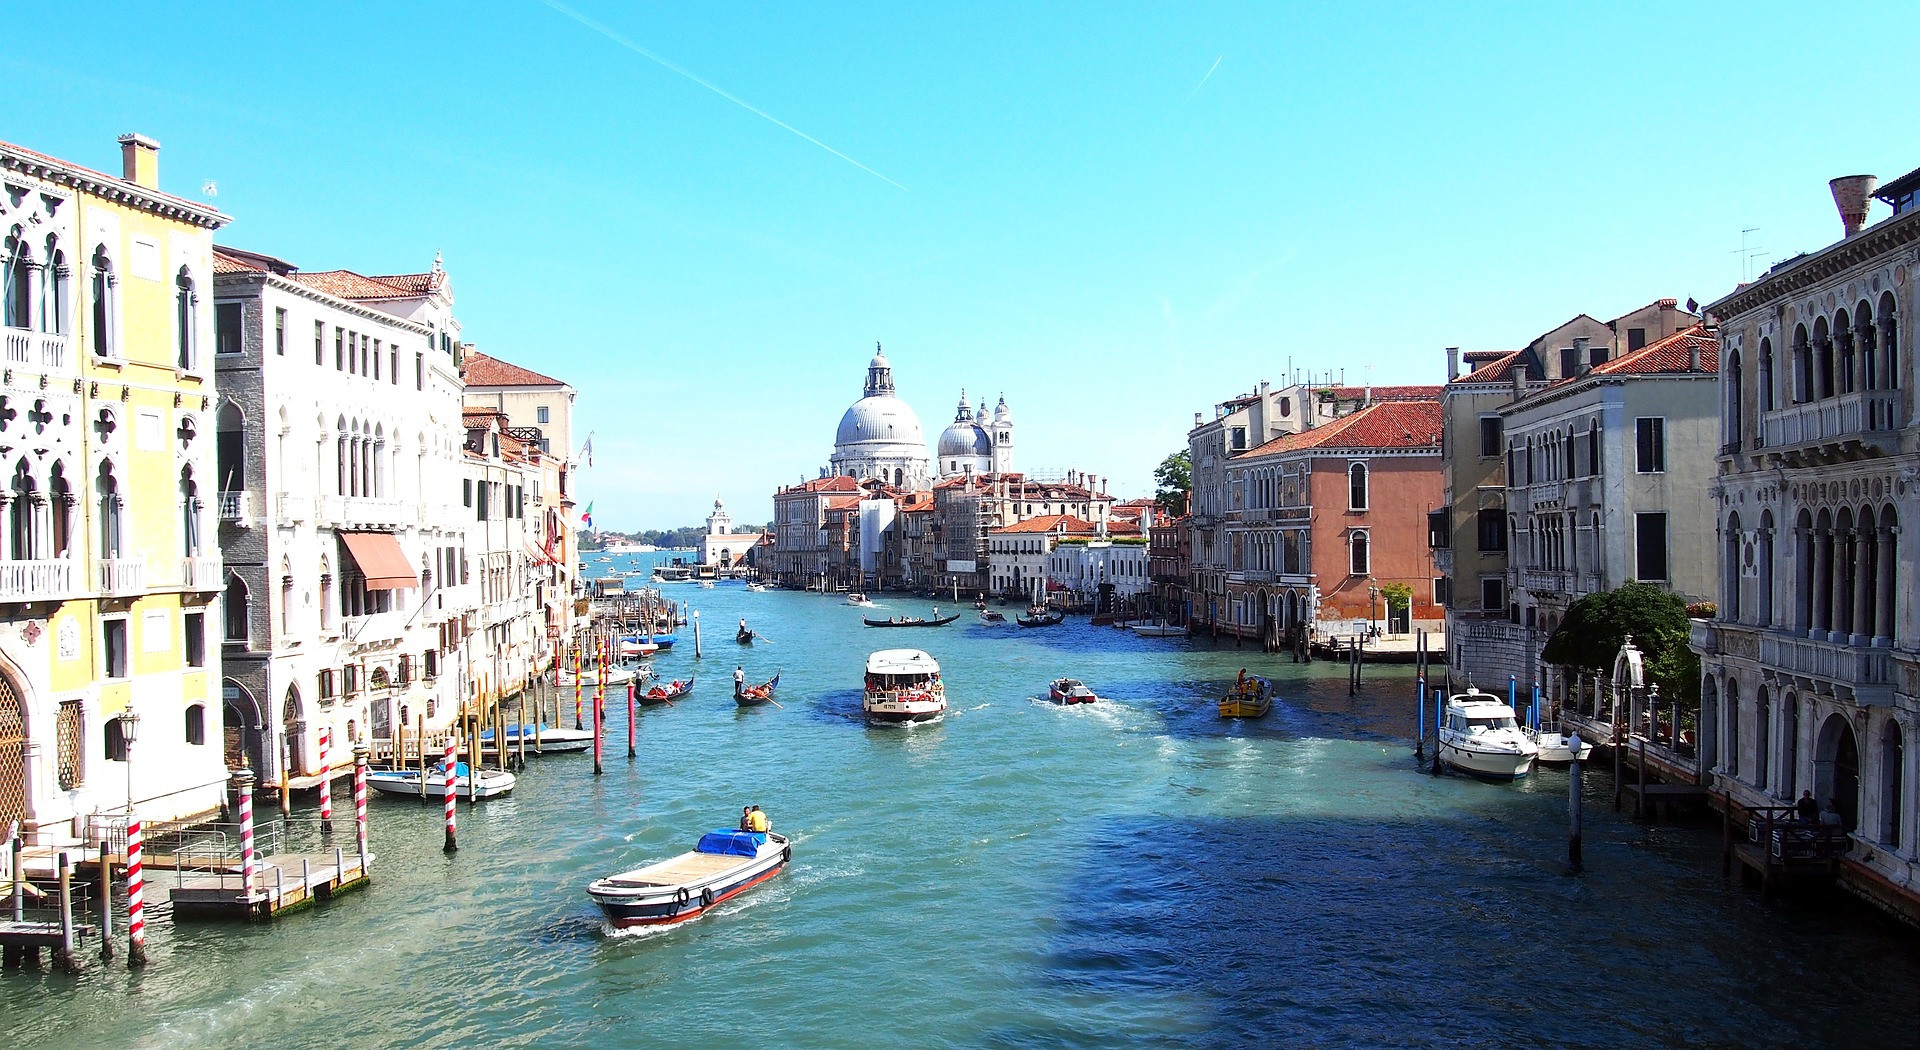 Taliansko praská romantickými a historickými pamiatkami, ale Benátky sú druhom mesta, ktoré by mal každý navštíviť aspoň raz v živote. La Bella Venezia a romantika idú ruka v ruke. Staroveké prístavné mesto na severovýchode Talianska je plné očarujúcich kanálov, magických mostov a storočných budov.